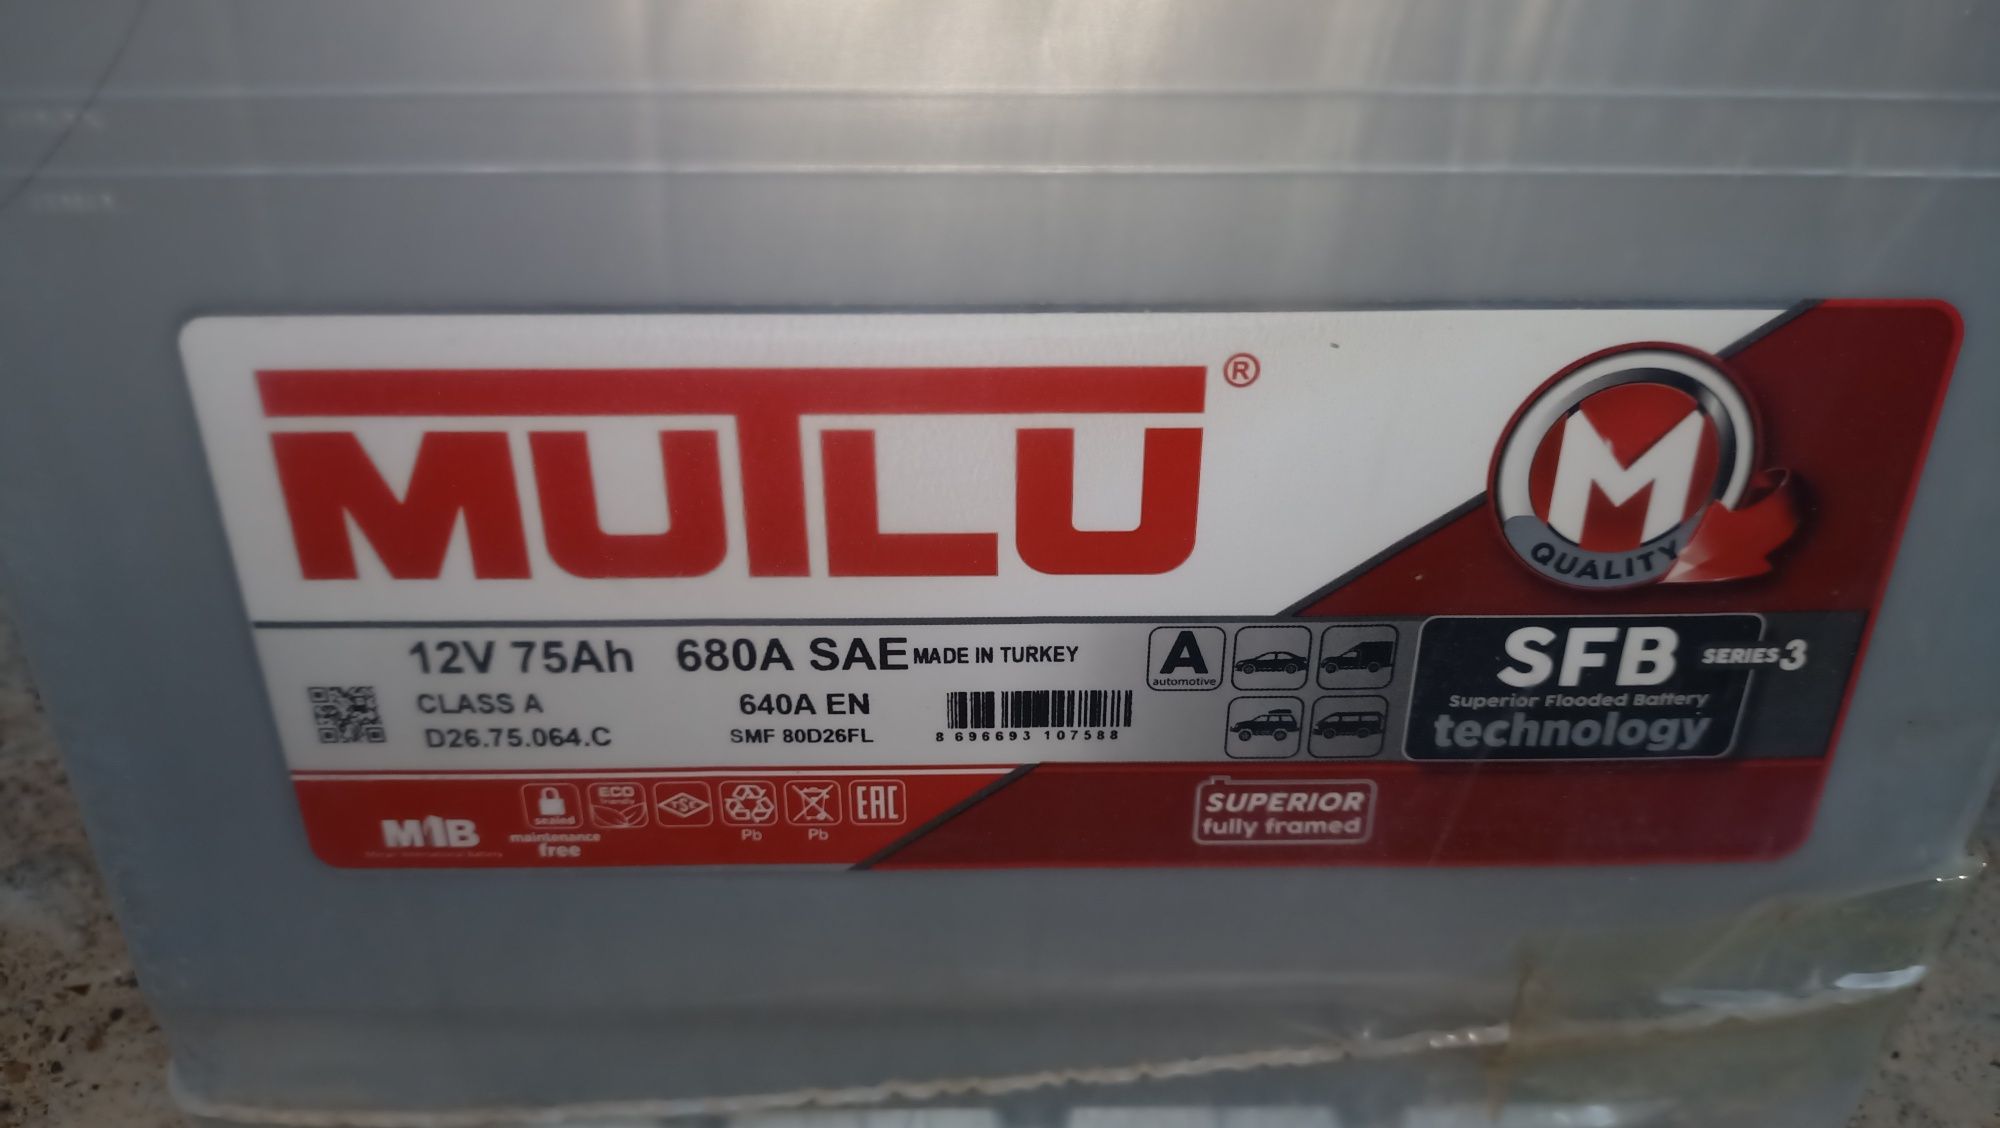 Продам новый аккумулятор Mutlu 12V 75A/h 680A